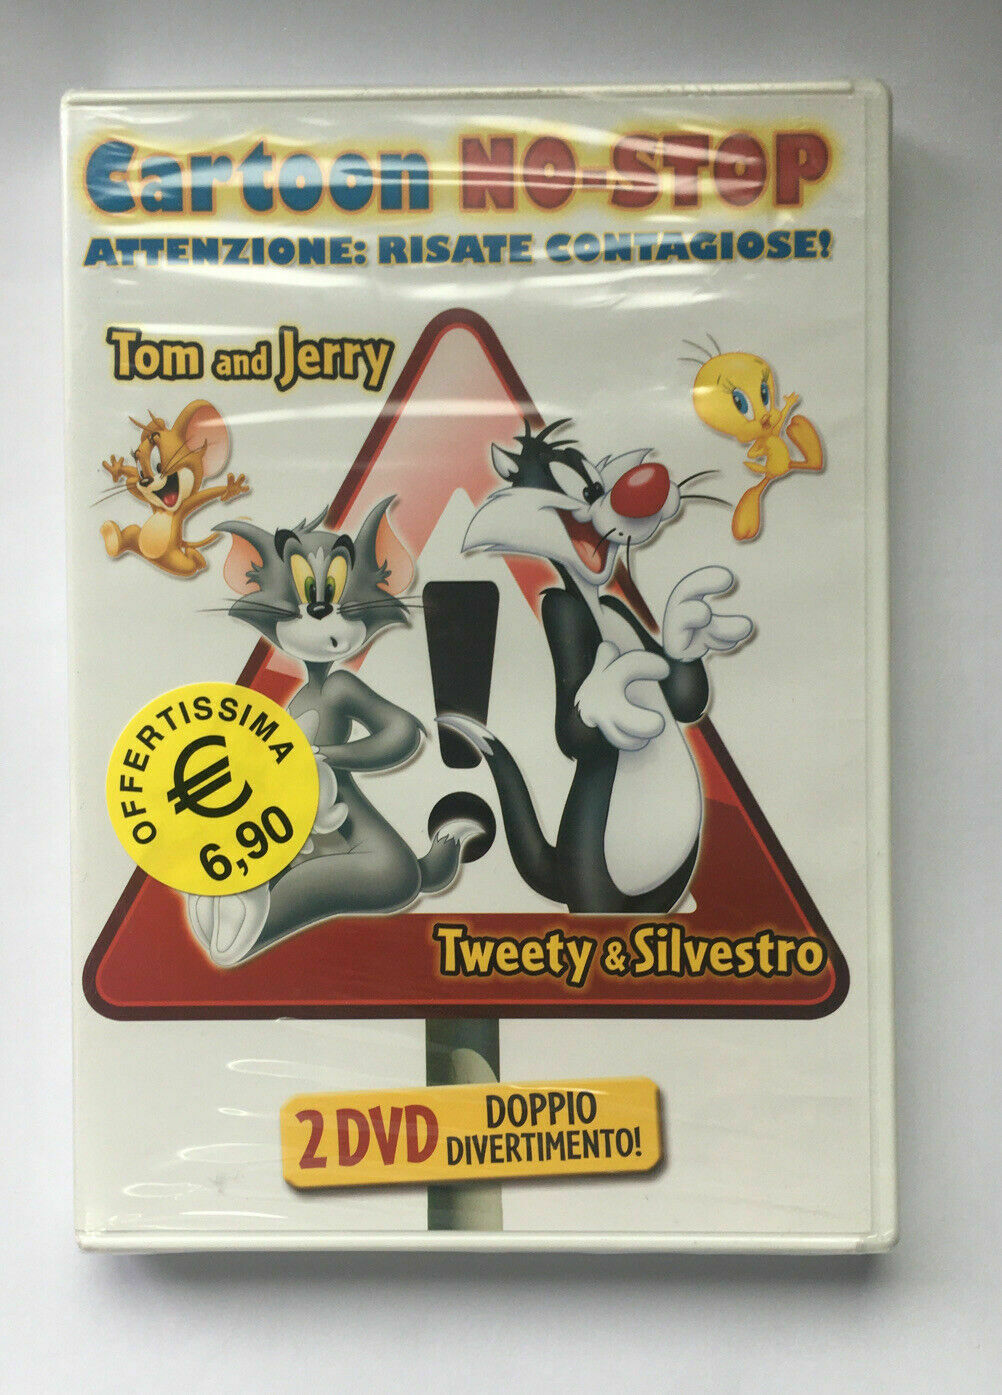 CARTOON NO-STOP attenzione: Risate Contagiose! Tom And Jerry/Twetty & Silvestro